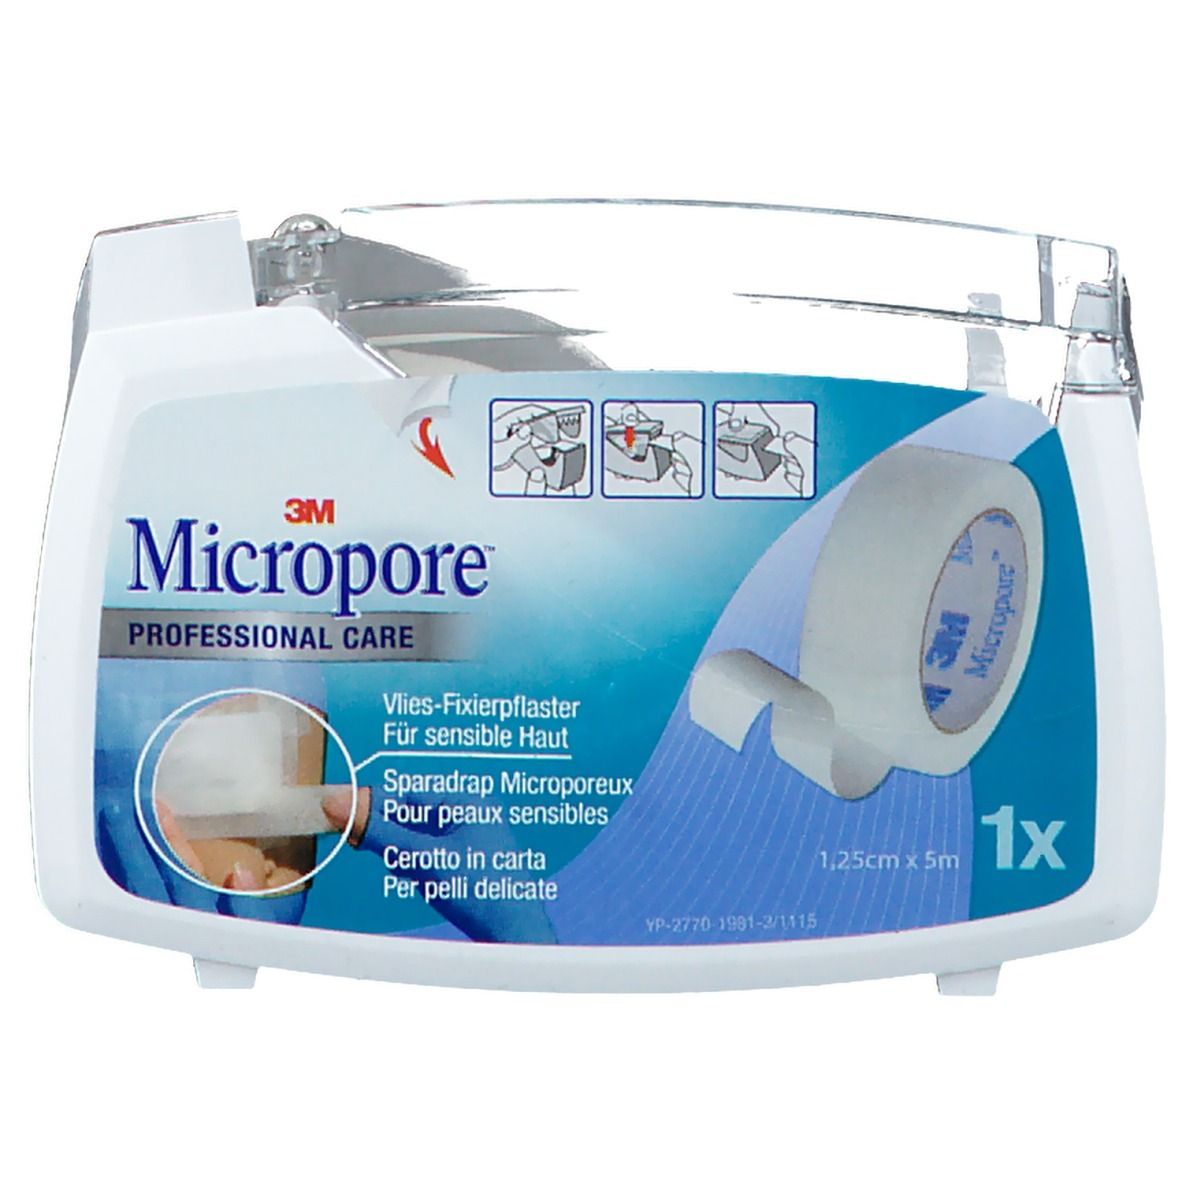 3M Micropore™ Professional Care 1,25 cm x 5 m